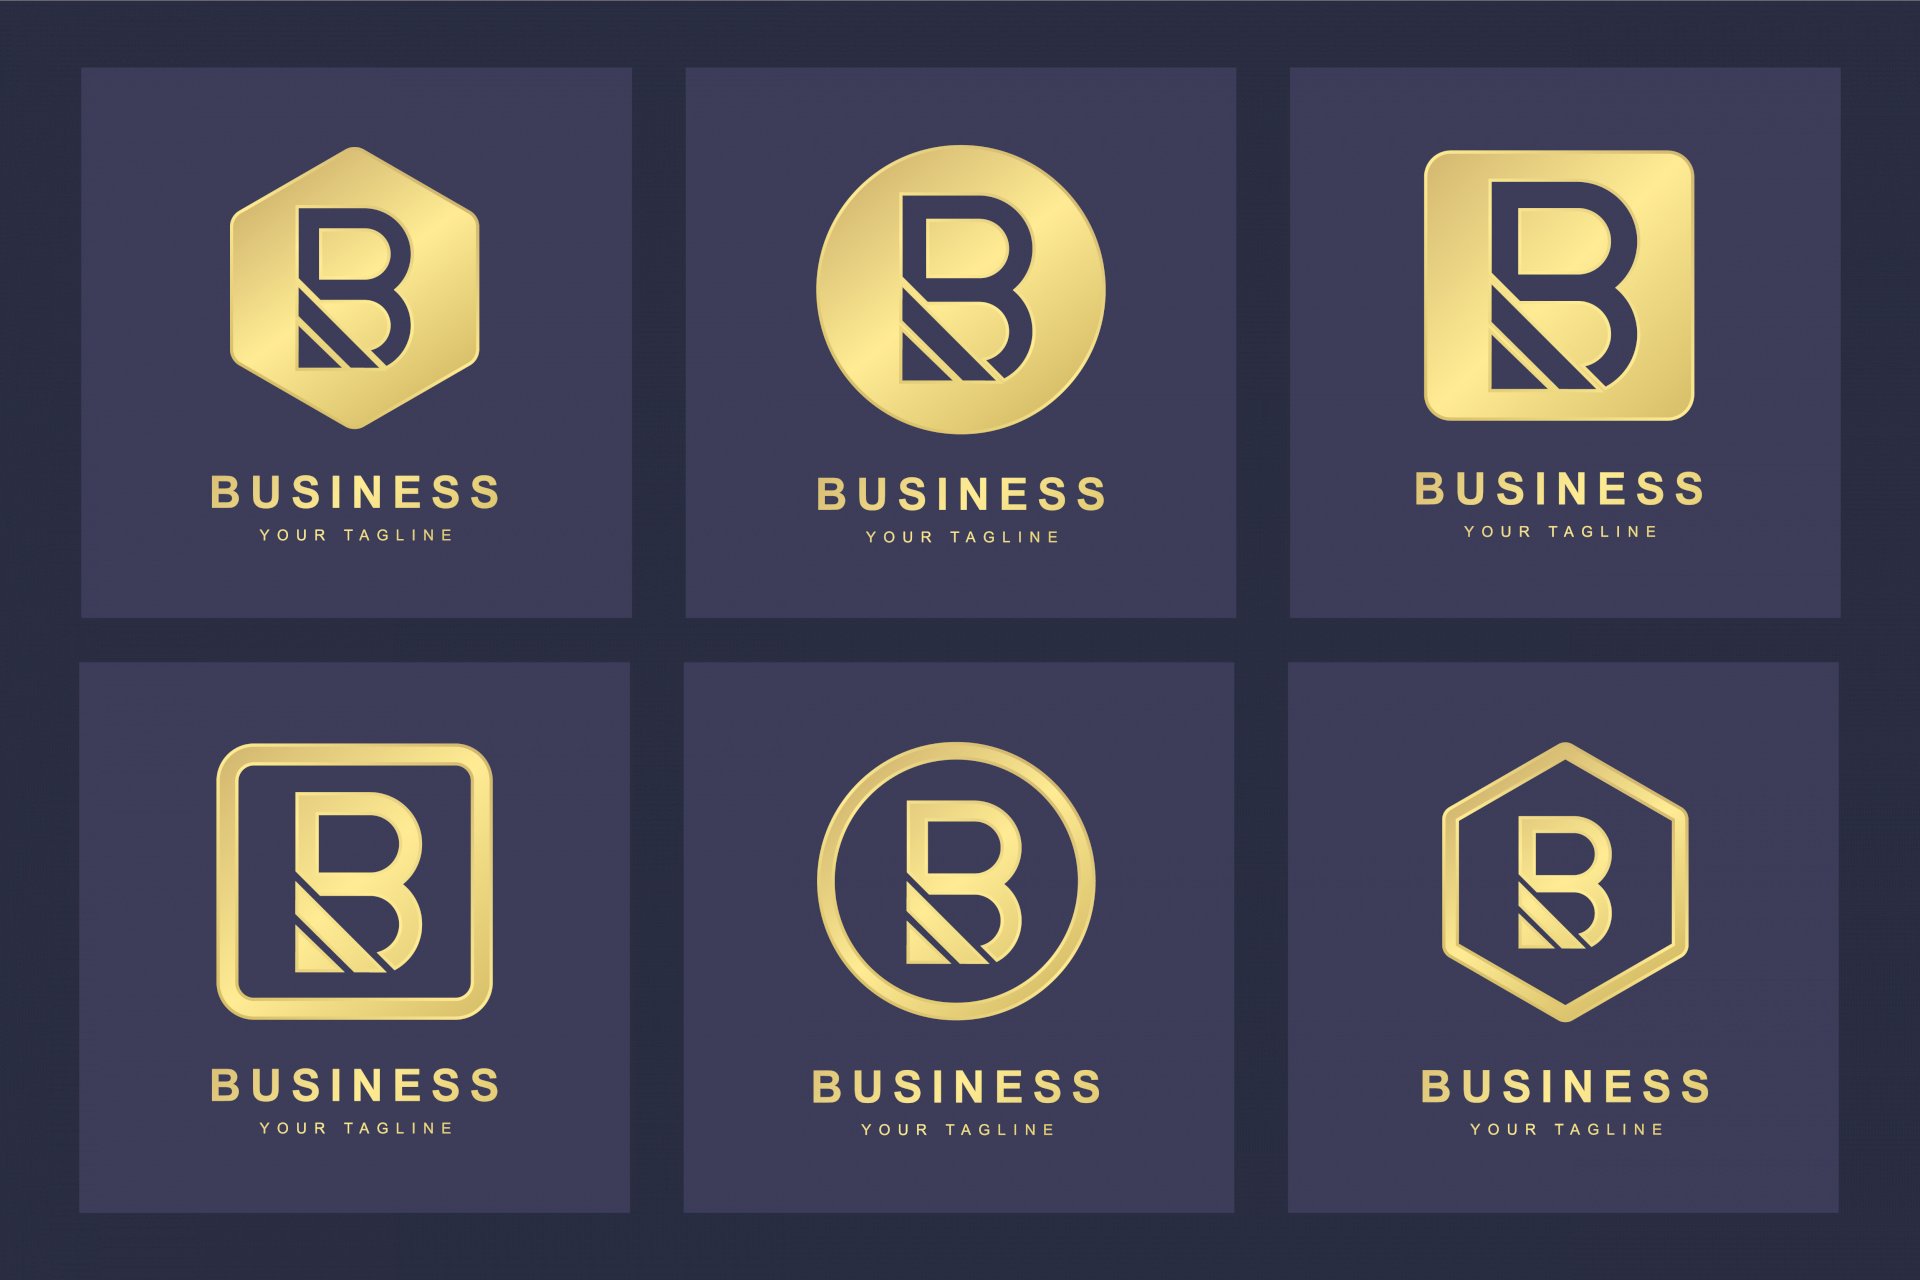 Tải B logo Vector, AI, EPS, SVG, PNG, mẫu logo chữ B đẹp, cách ...